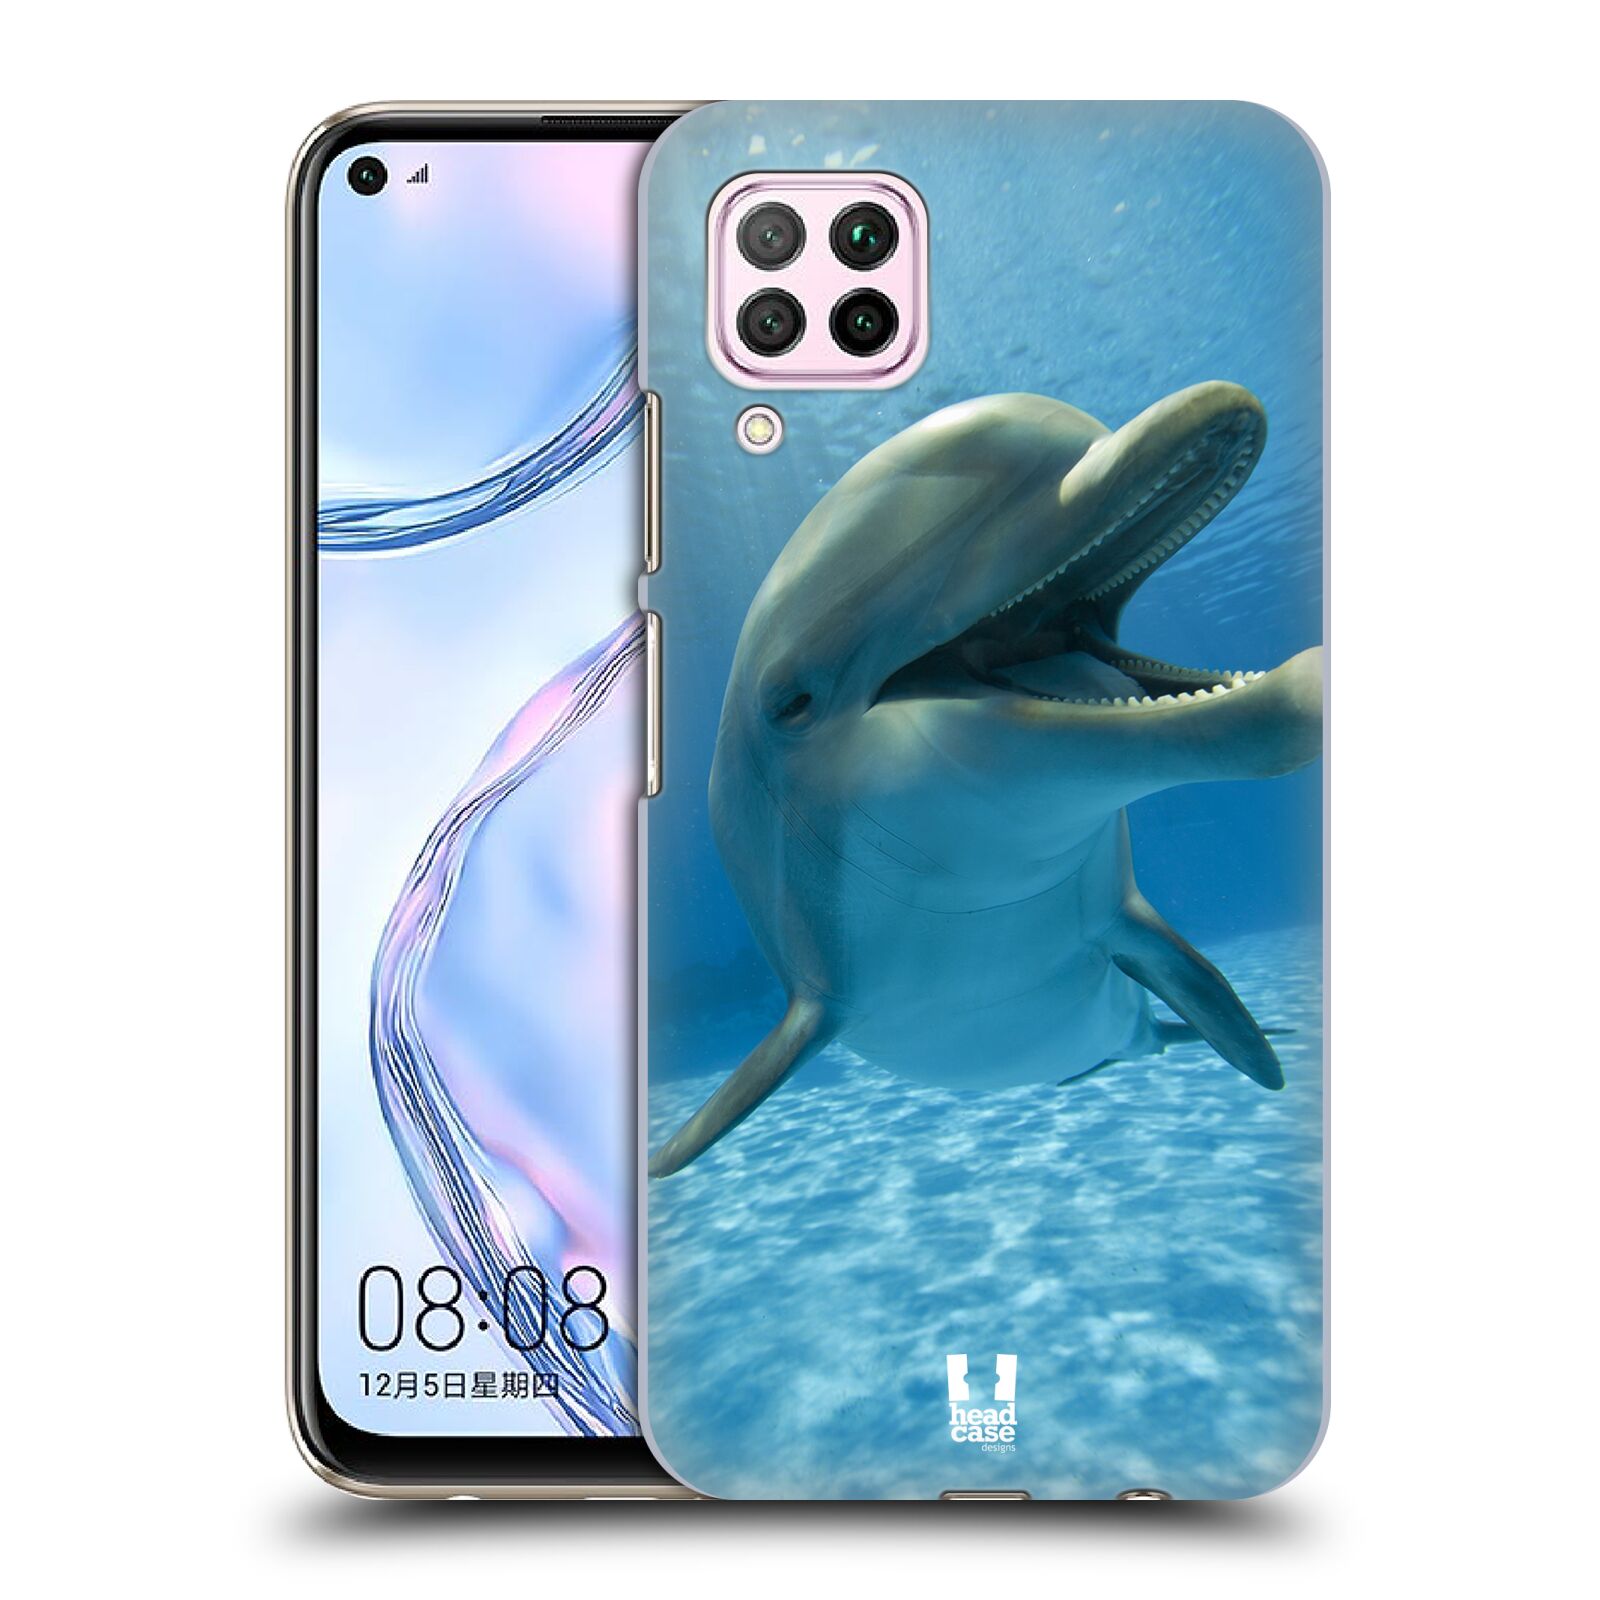 Zadní obal pro mobil Huawei P40 LITE - HEAD CASE - Svět zvířat delfín v moři